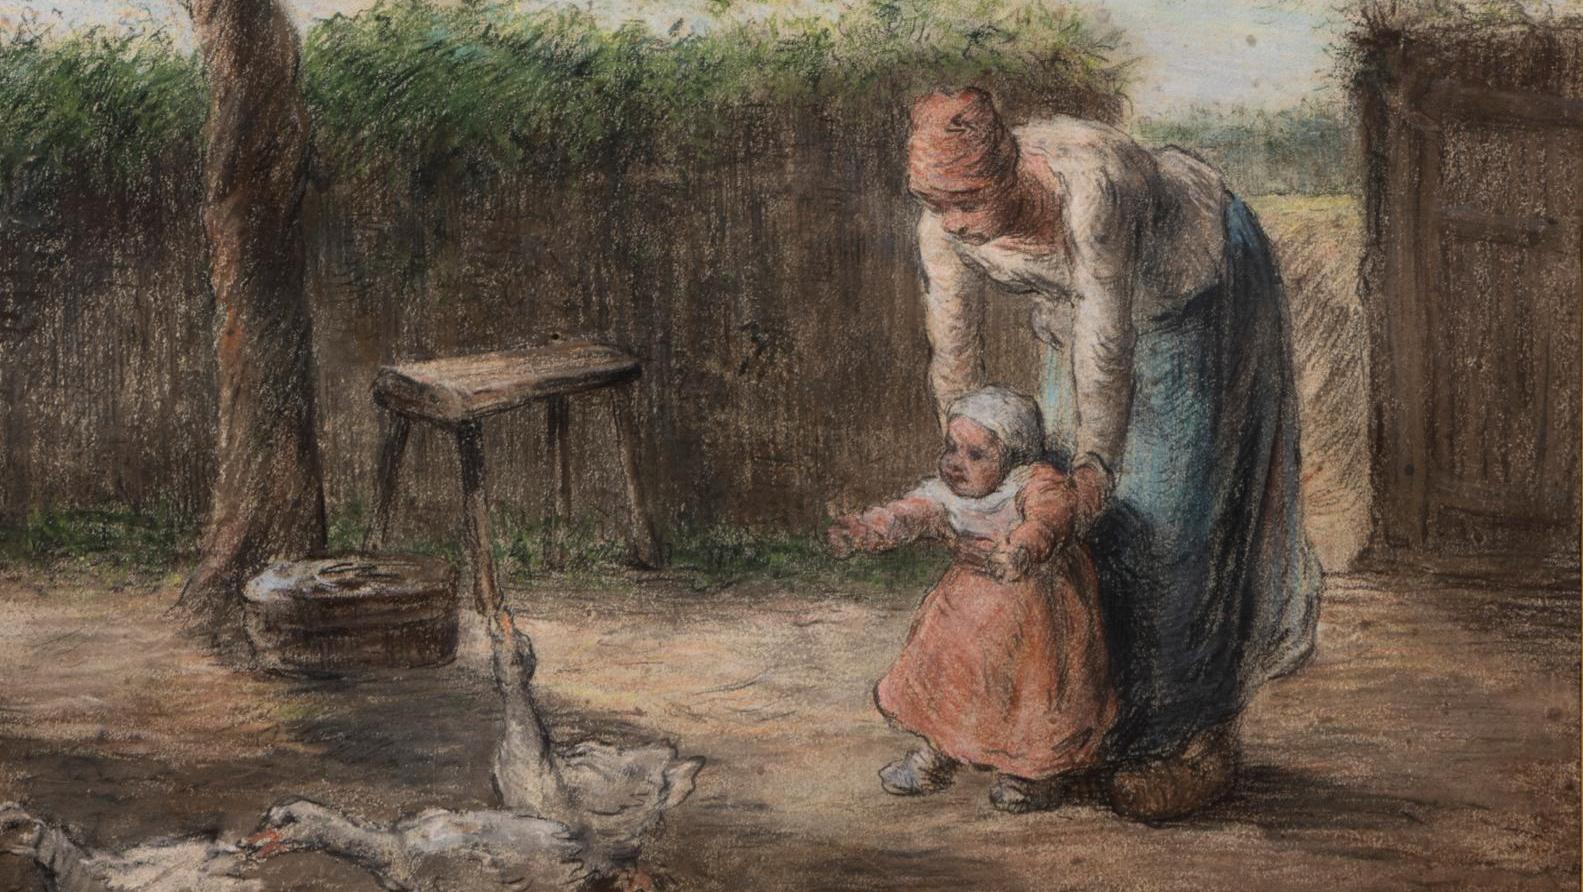 Jean-François Millet (1814-1875), The First Steps, pastel on paper, signed 40 x 46.7... Millet: The First Steps of an Accomplished Artist